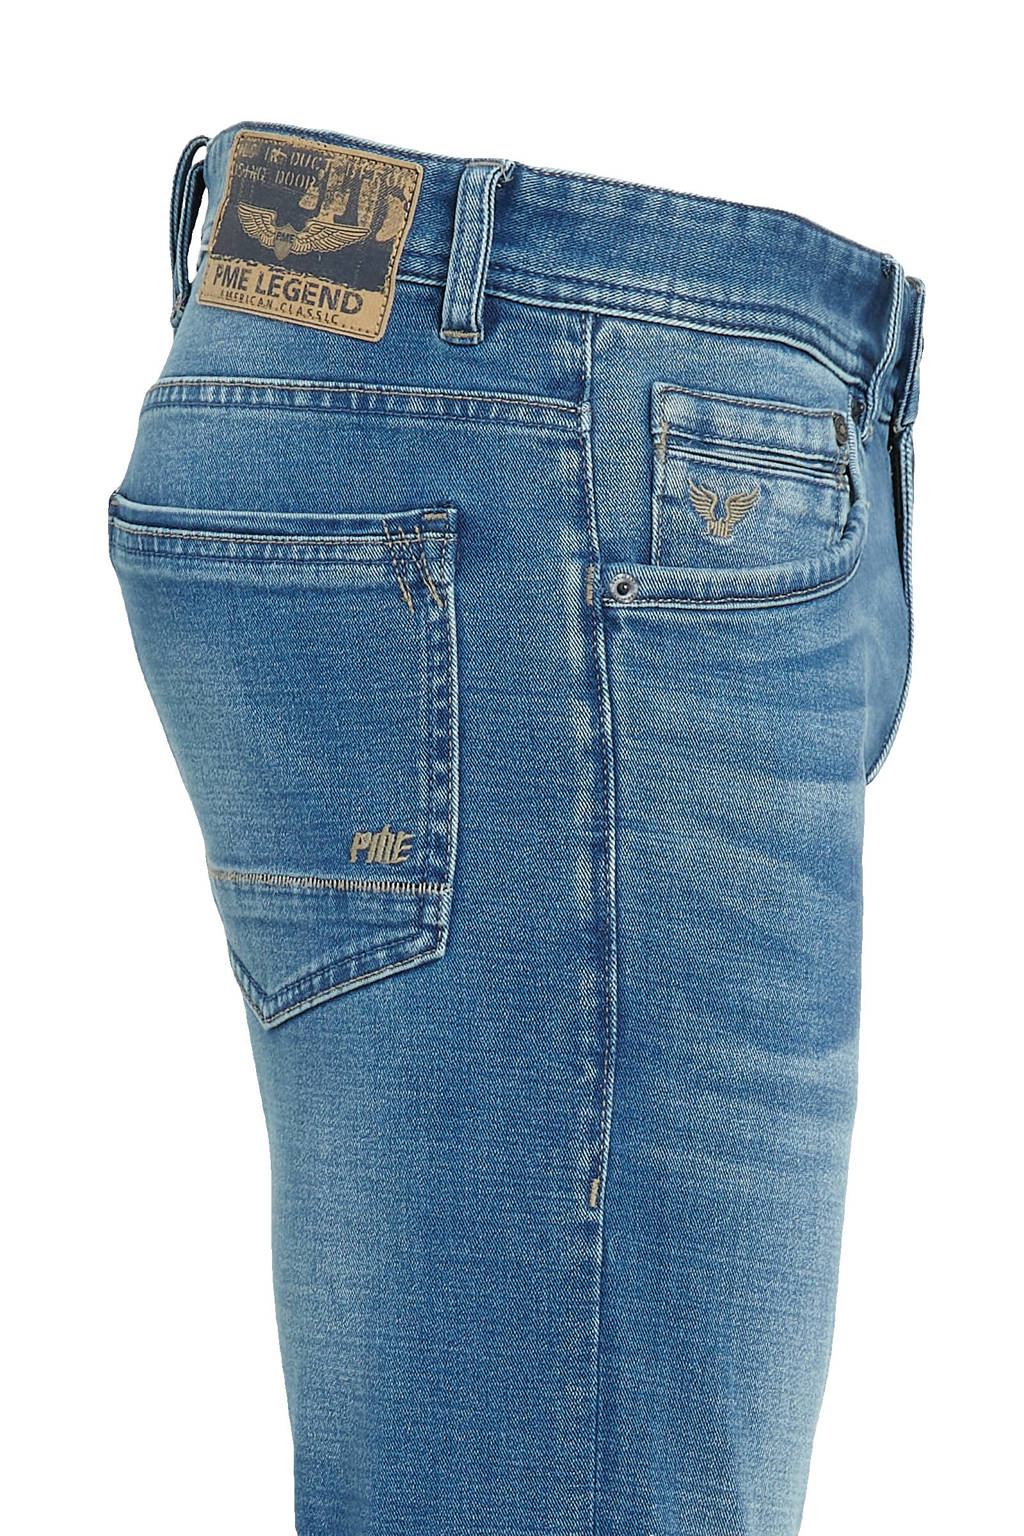 PME Legend slim fit jeans Tailwheel soft mid blue | Union River